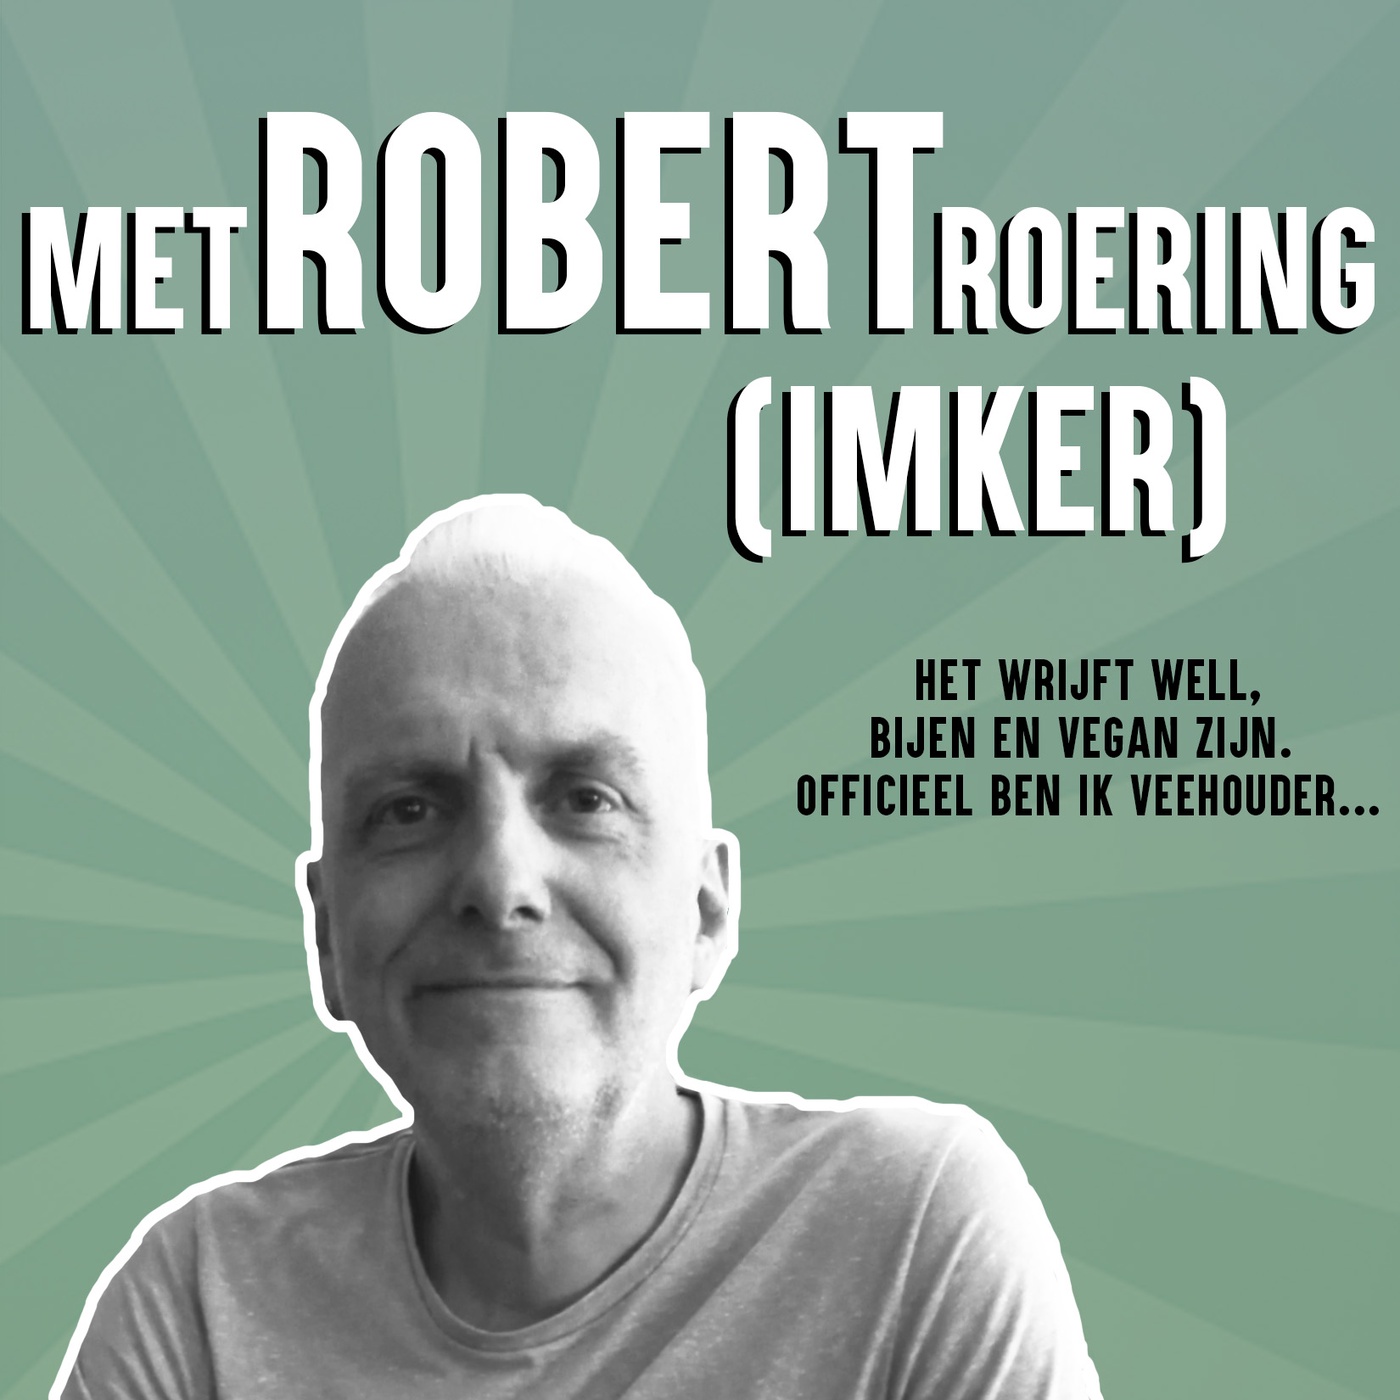 Vegan Imker: Interview met Robert Roering